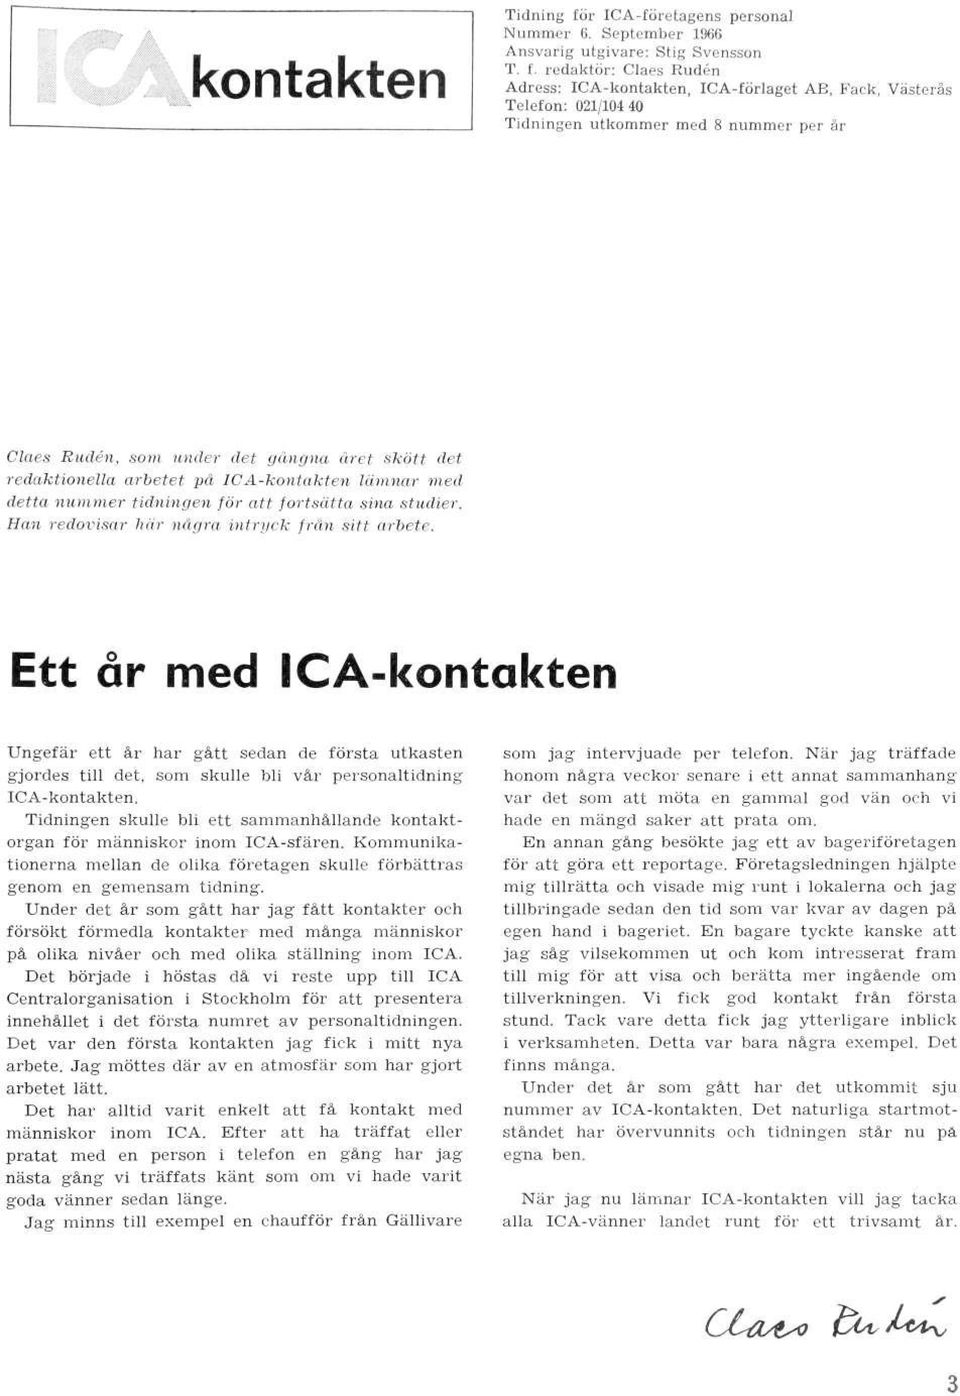 redaktör: Claes Rudén Adress: ICA-kontakten, ICA-förlaget AB, Fack, Västerås Telefon: 021/104 40 Tidningen utkommer med 8 nummer per år Claes Rudén, som under det gångna året skött det redaktionella